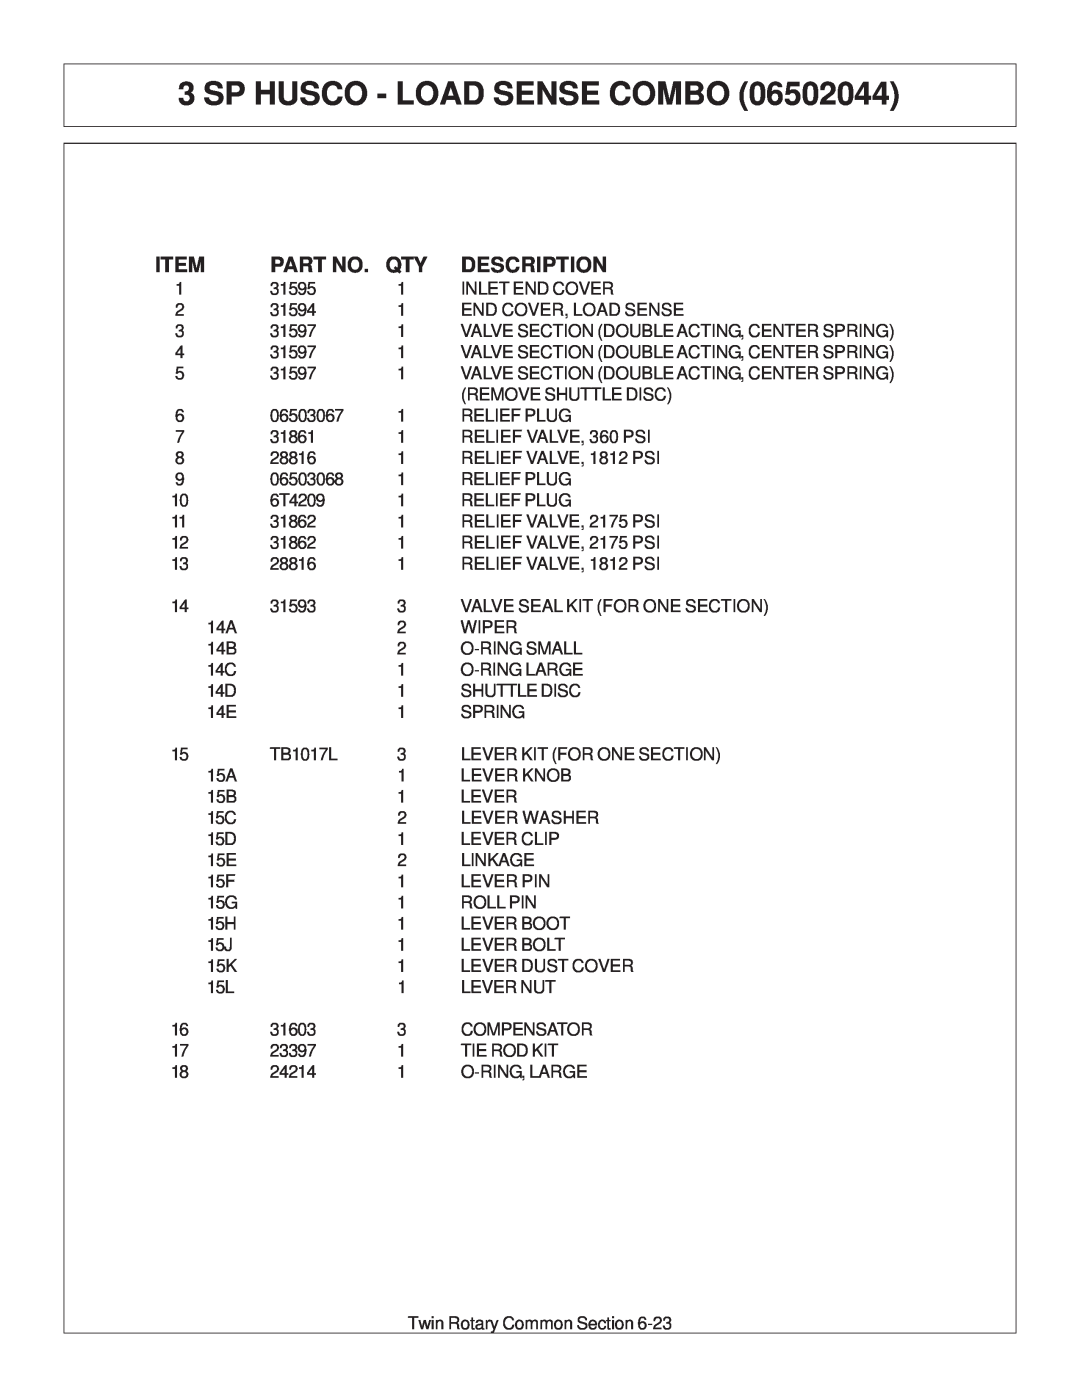 Tiger Products Co., Ltd 6020009 manual Sp Husco - Load Sense Combo, Description 